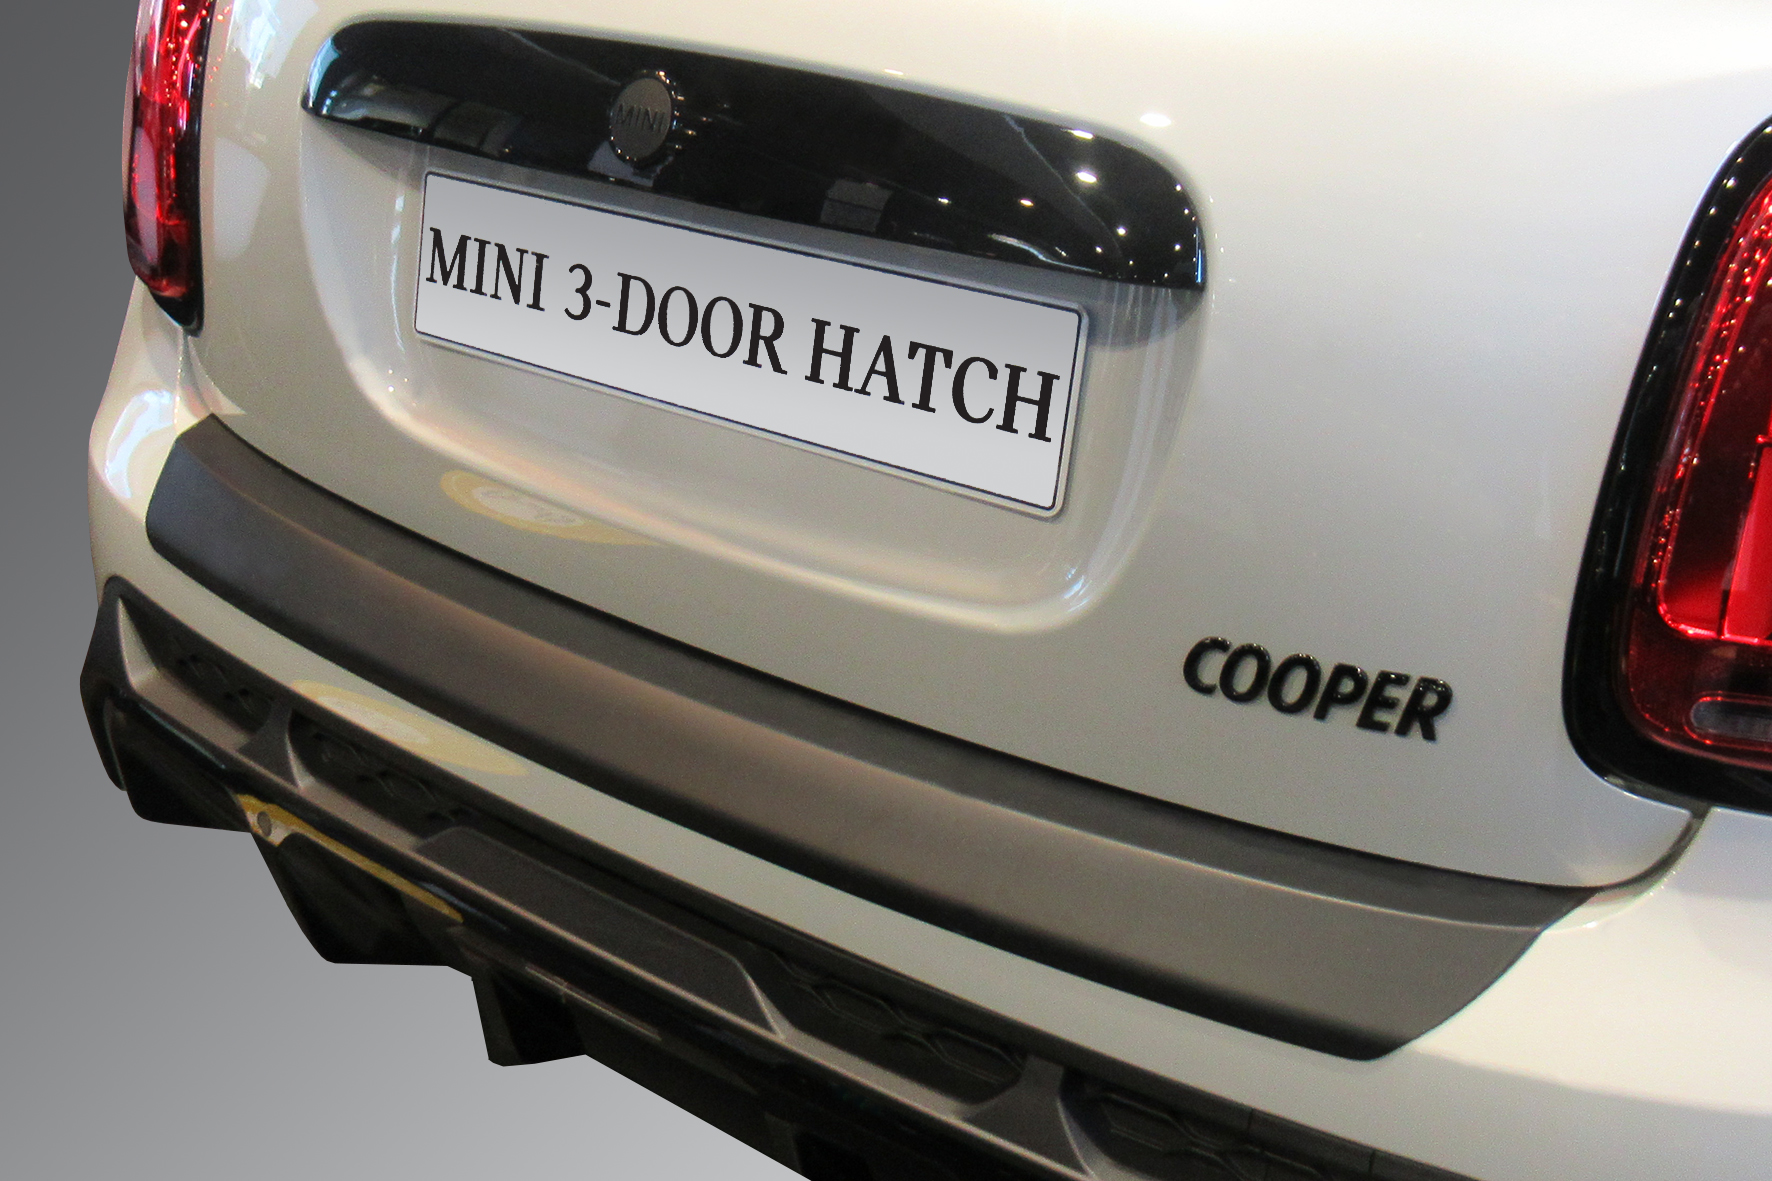 One Ladekantenschutz MINI für Ladekante Schutz für Ihres Cabrio die Fahrzeuges - Cooper und